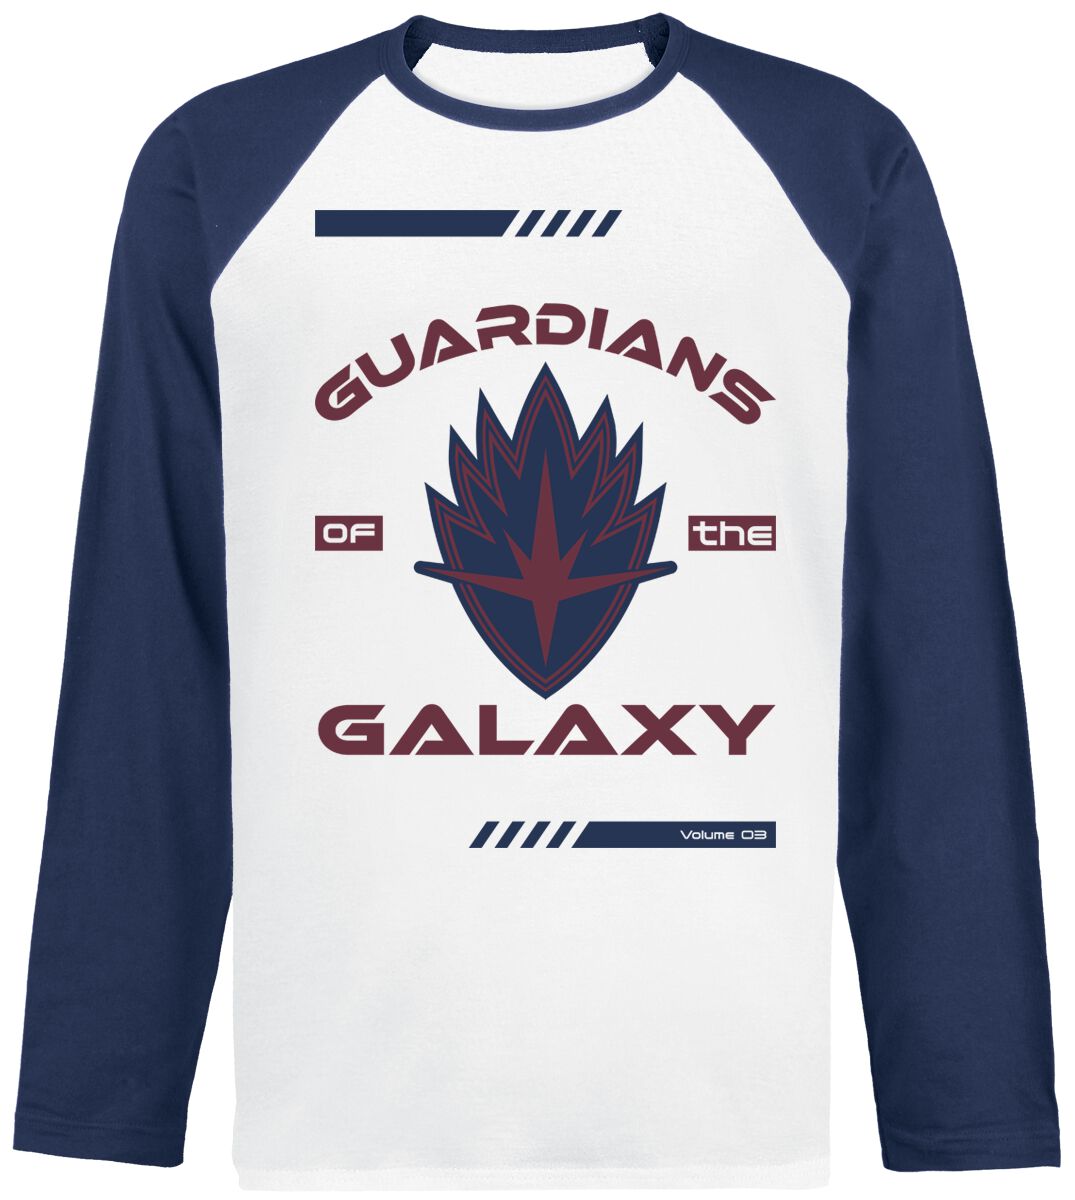 Guardians Of The Galaxy - Marvel Langarmshirt - Vol. 3 - Badge - S bis XL - für Männer - Größe M - weiß/navy  - EMP exklusives Merchandise!